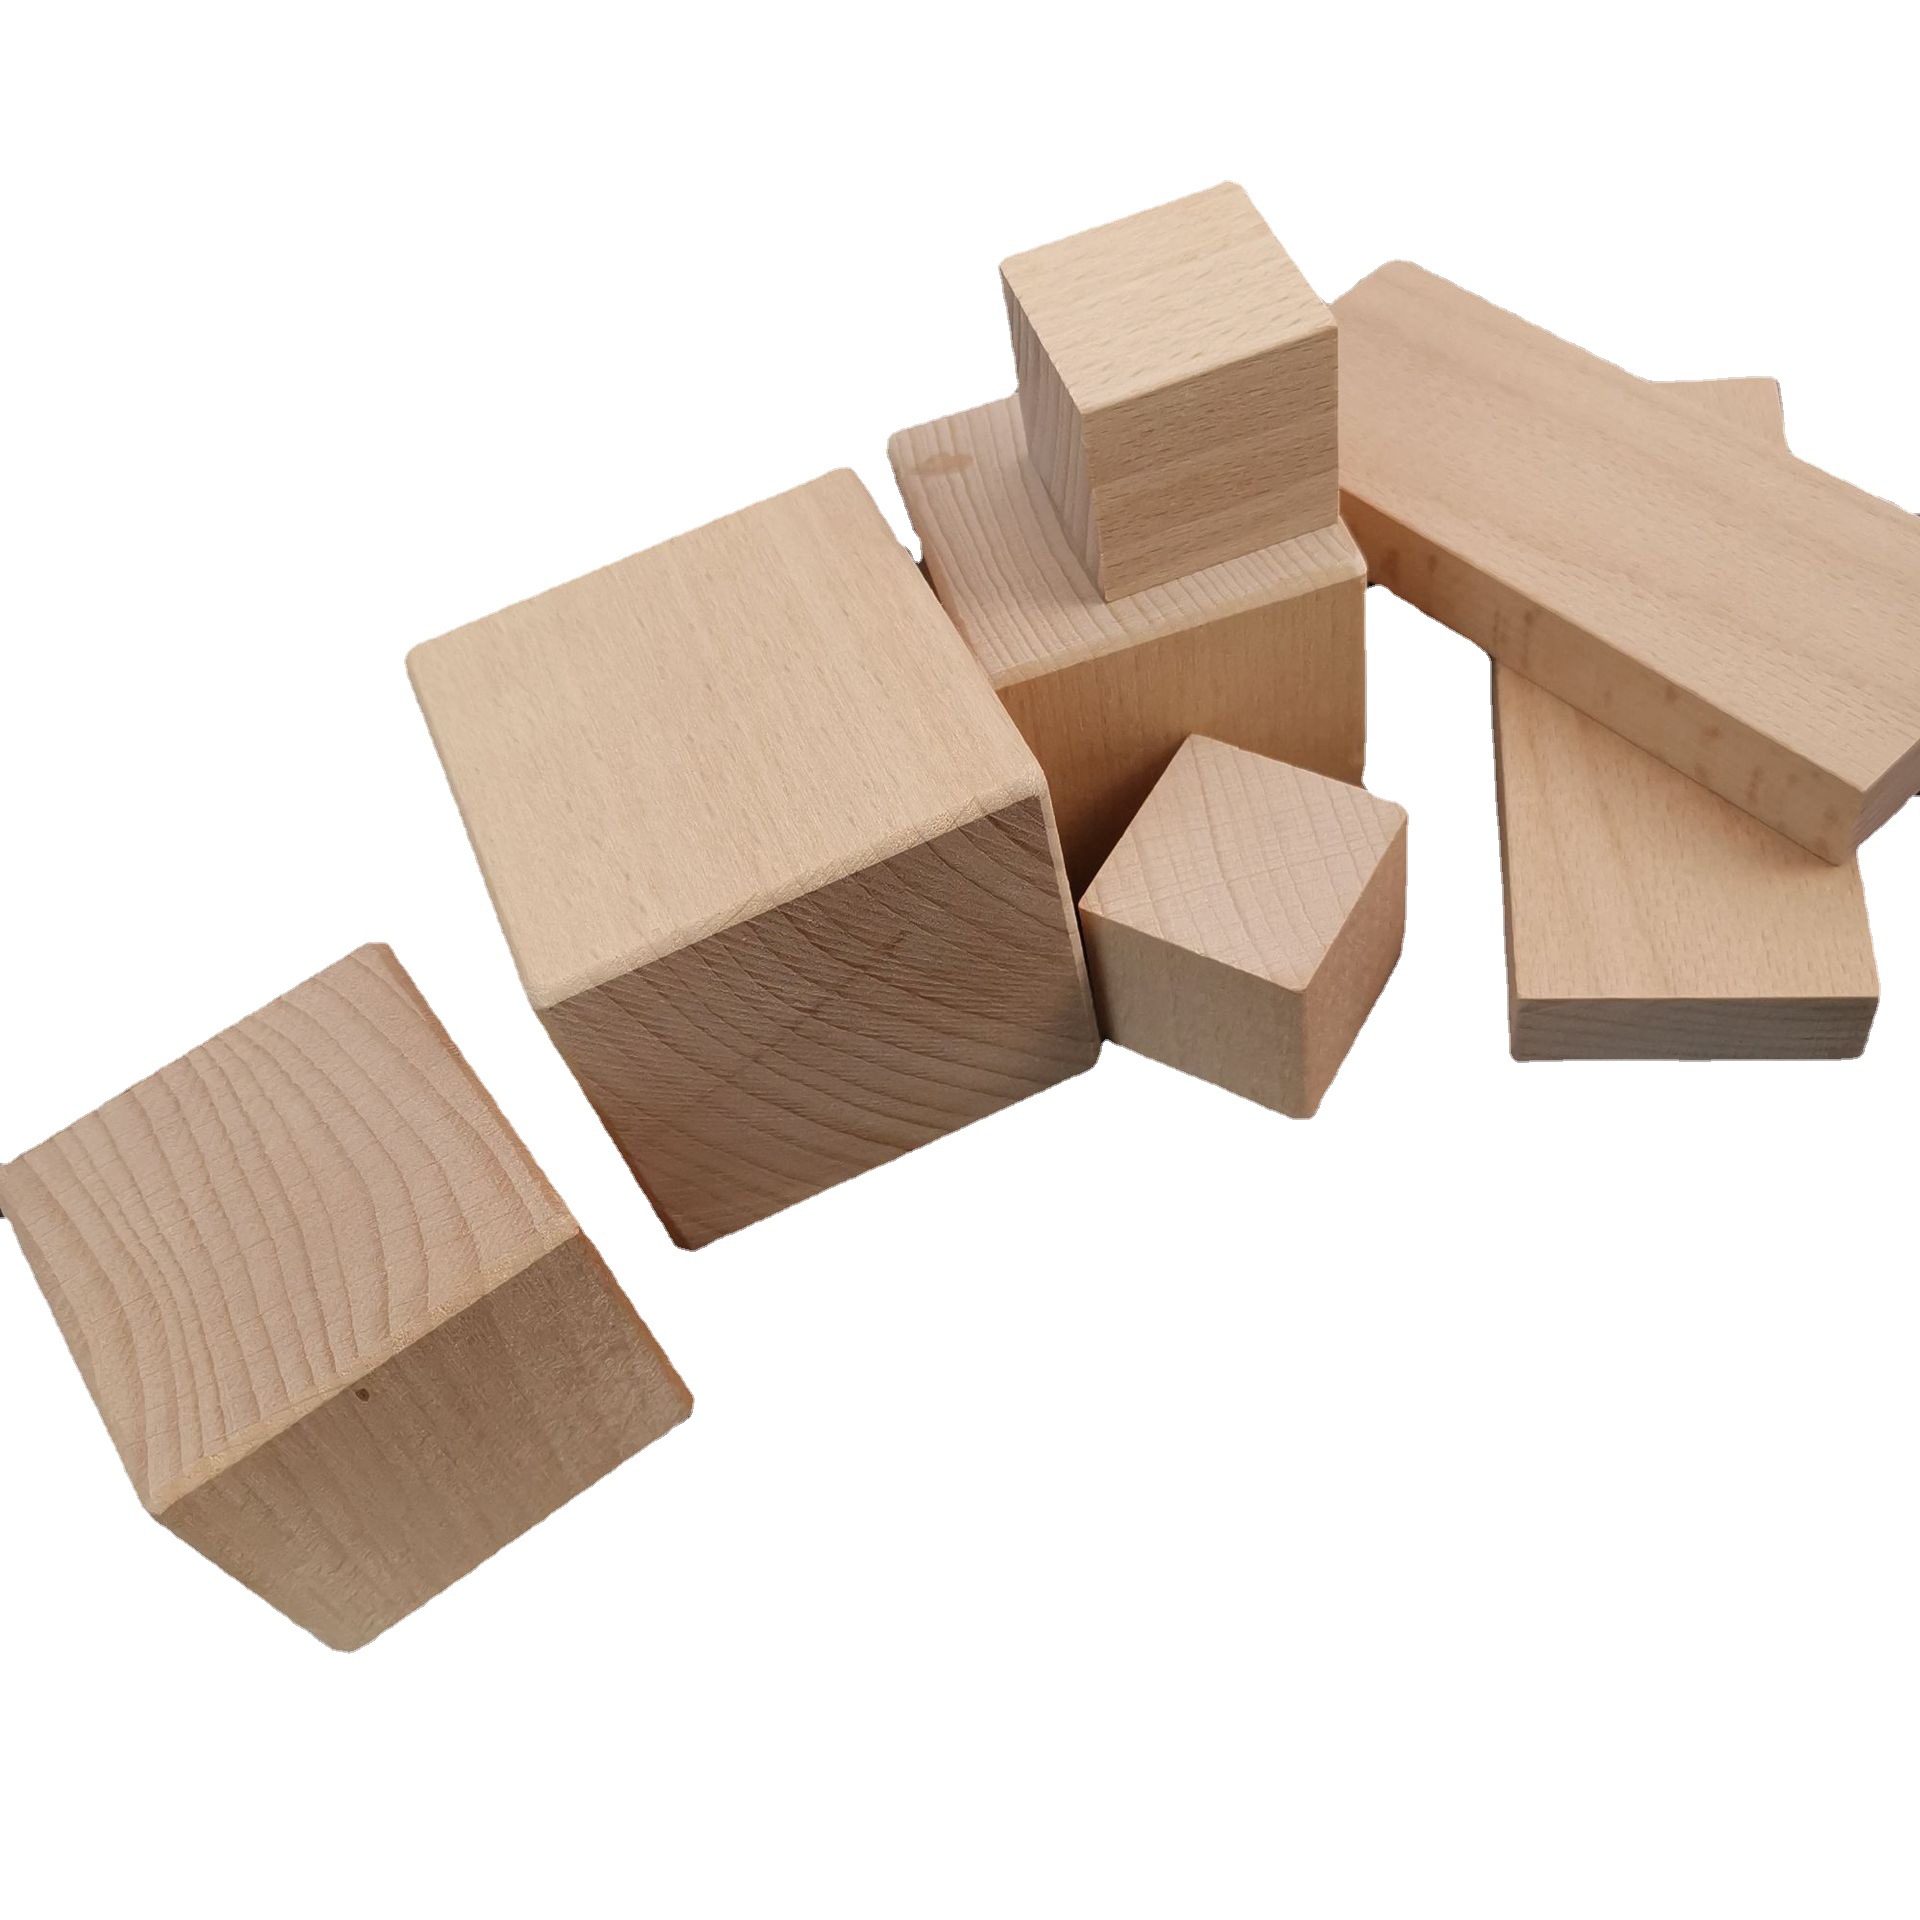 厂家供应正方形松木块 儿童玩具积木块 数学教具方块 DIY模型